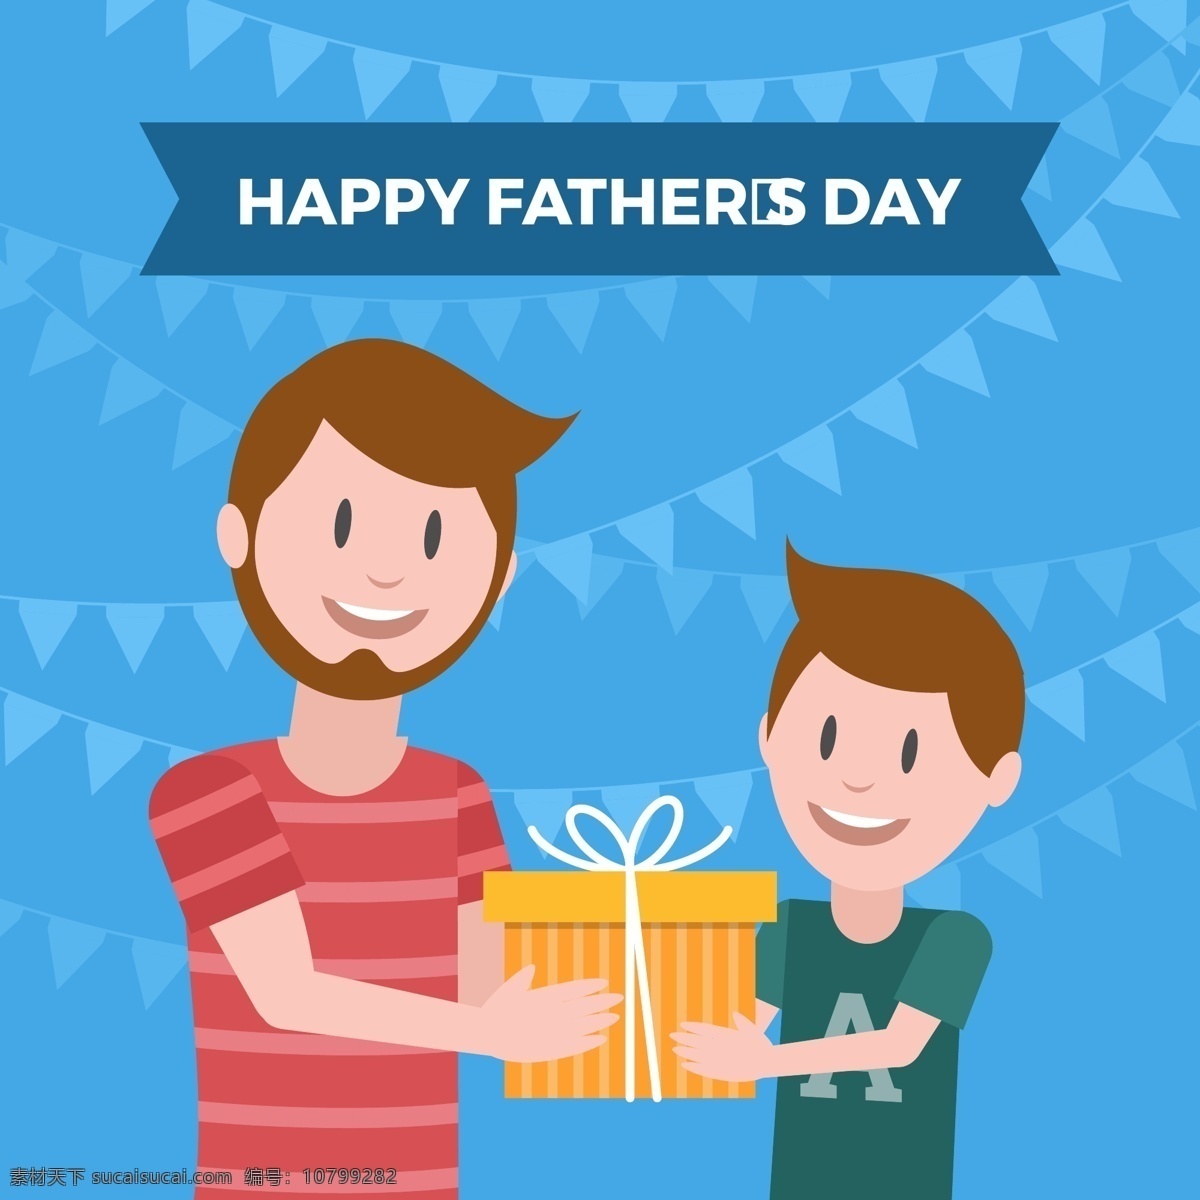 父亲节 快乐 儿子 礼物 父亲节设计 父亲节素材 父亲节元素 儿子的礼物